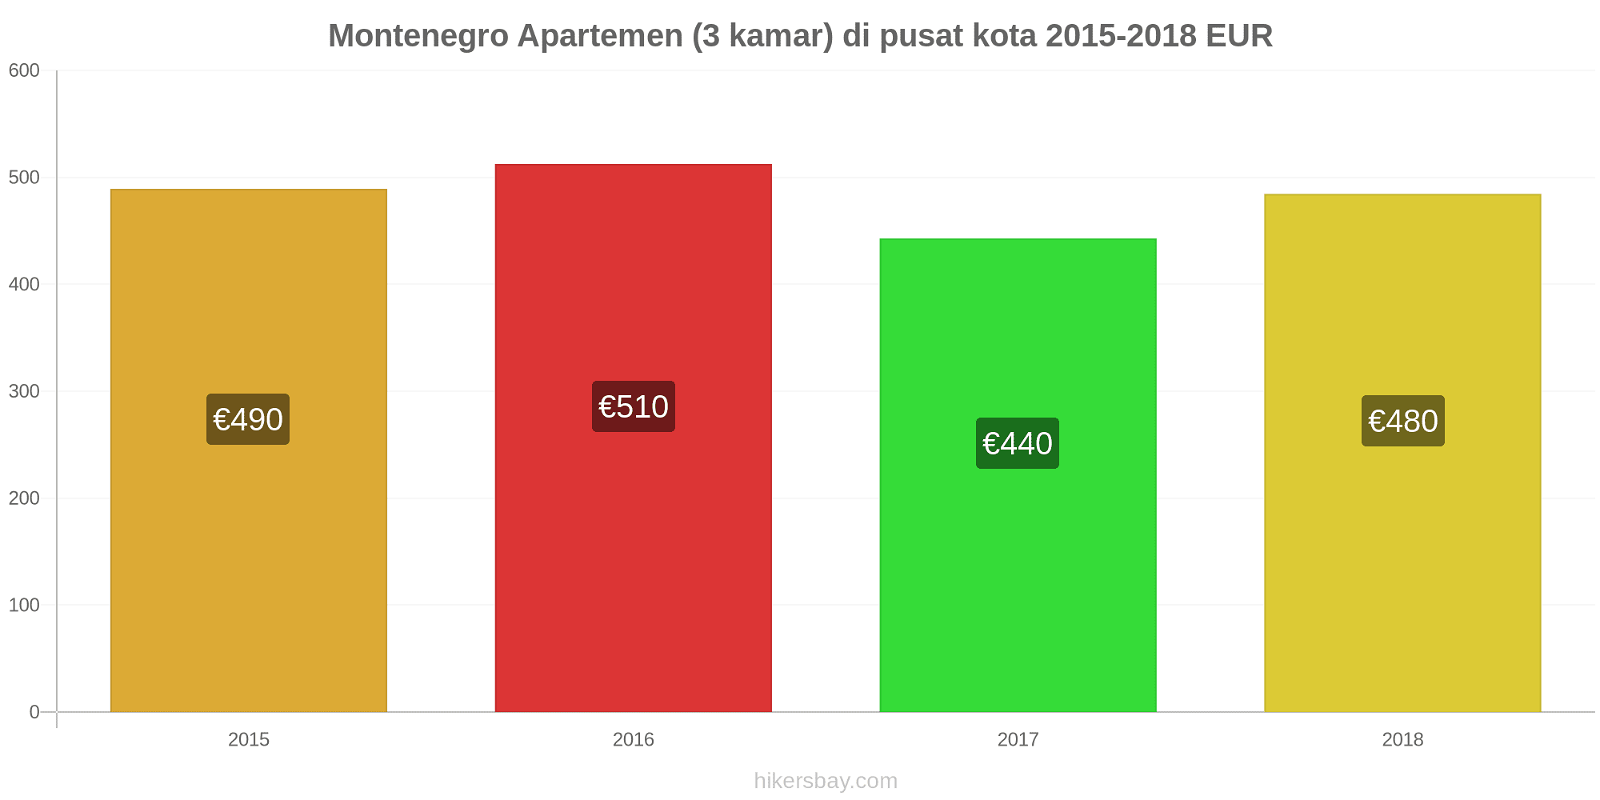 Montenegro perubahan harga Apartemen (3 kamar) di pusat kota hikersbay.com